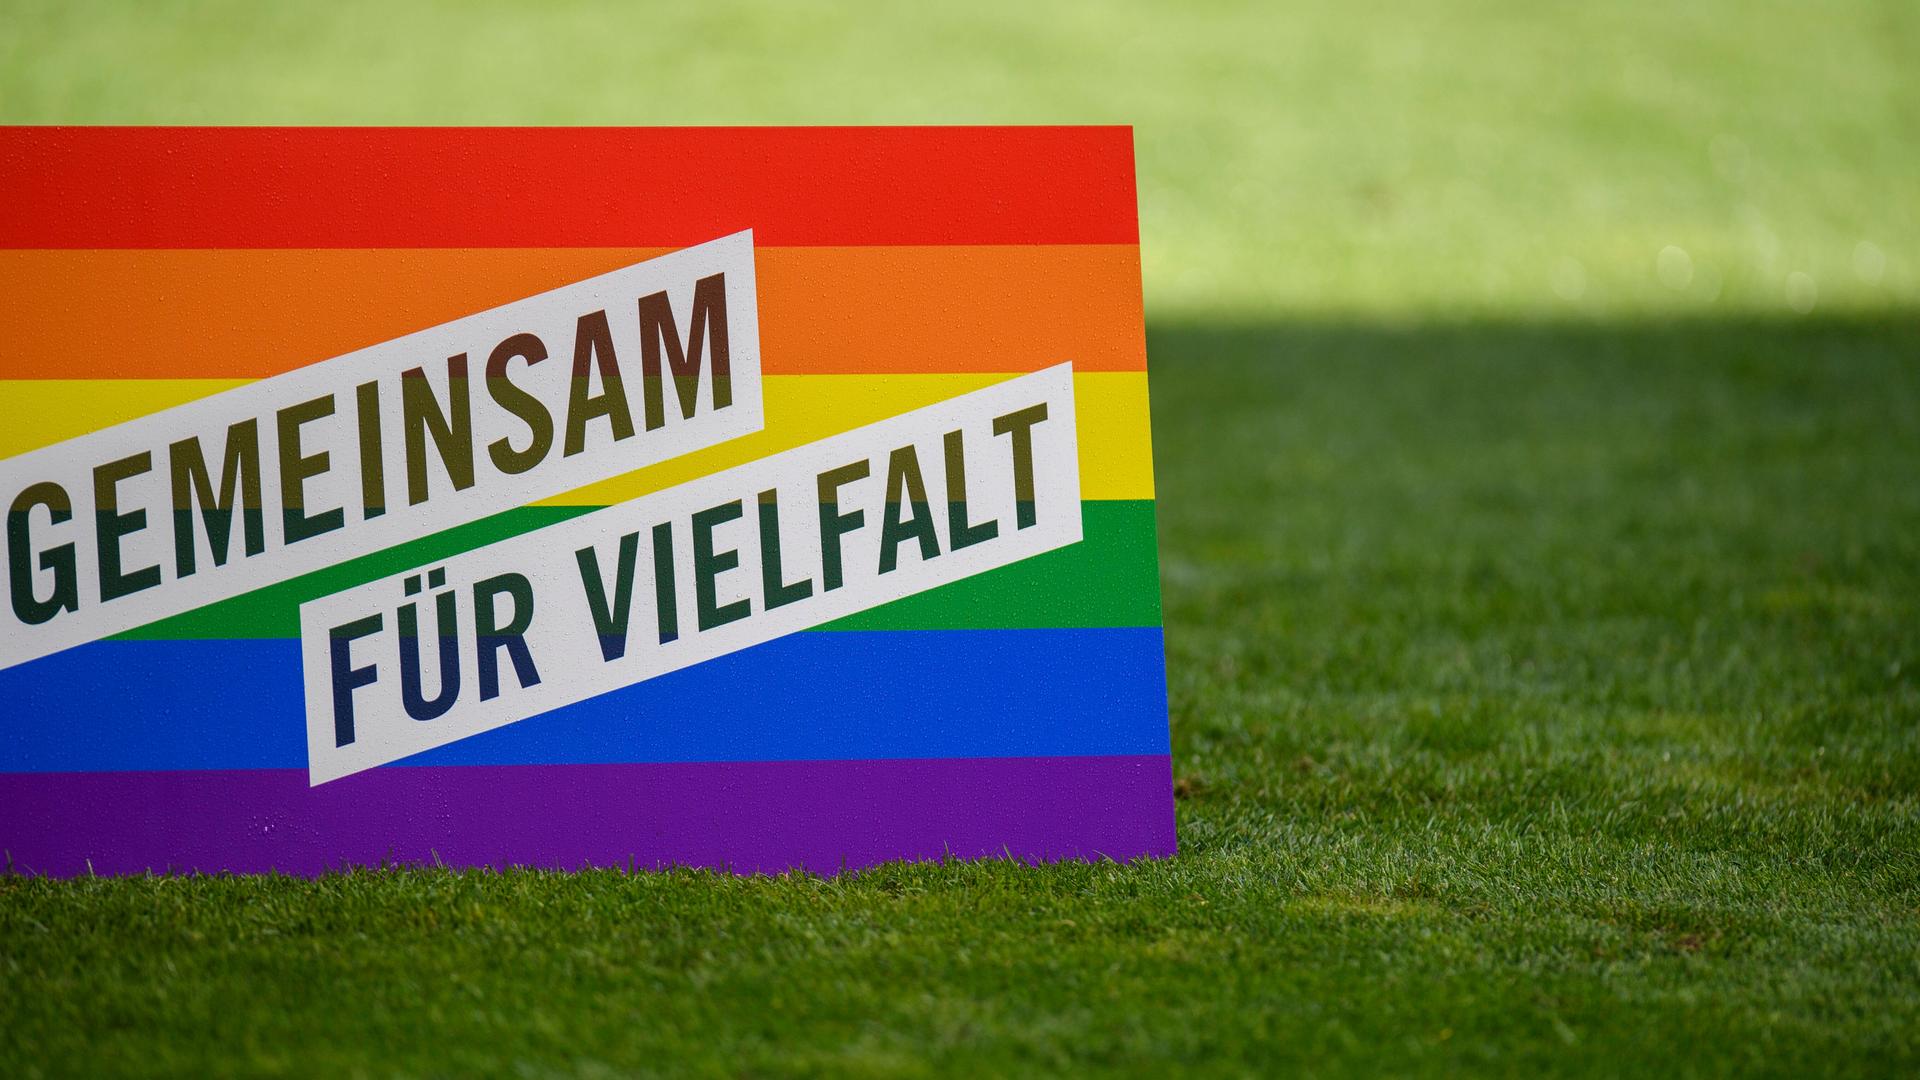 Ein Aufsteller in Regenbogenfarben mit der Aufschrift "Gemeinsam für Vielfalt" steht auf dem Rasen in einem Fußballstadion.